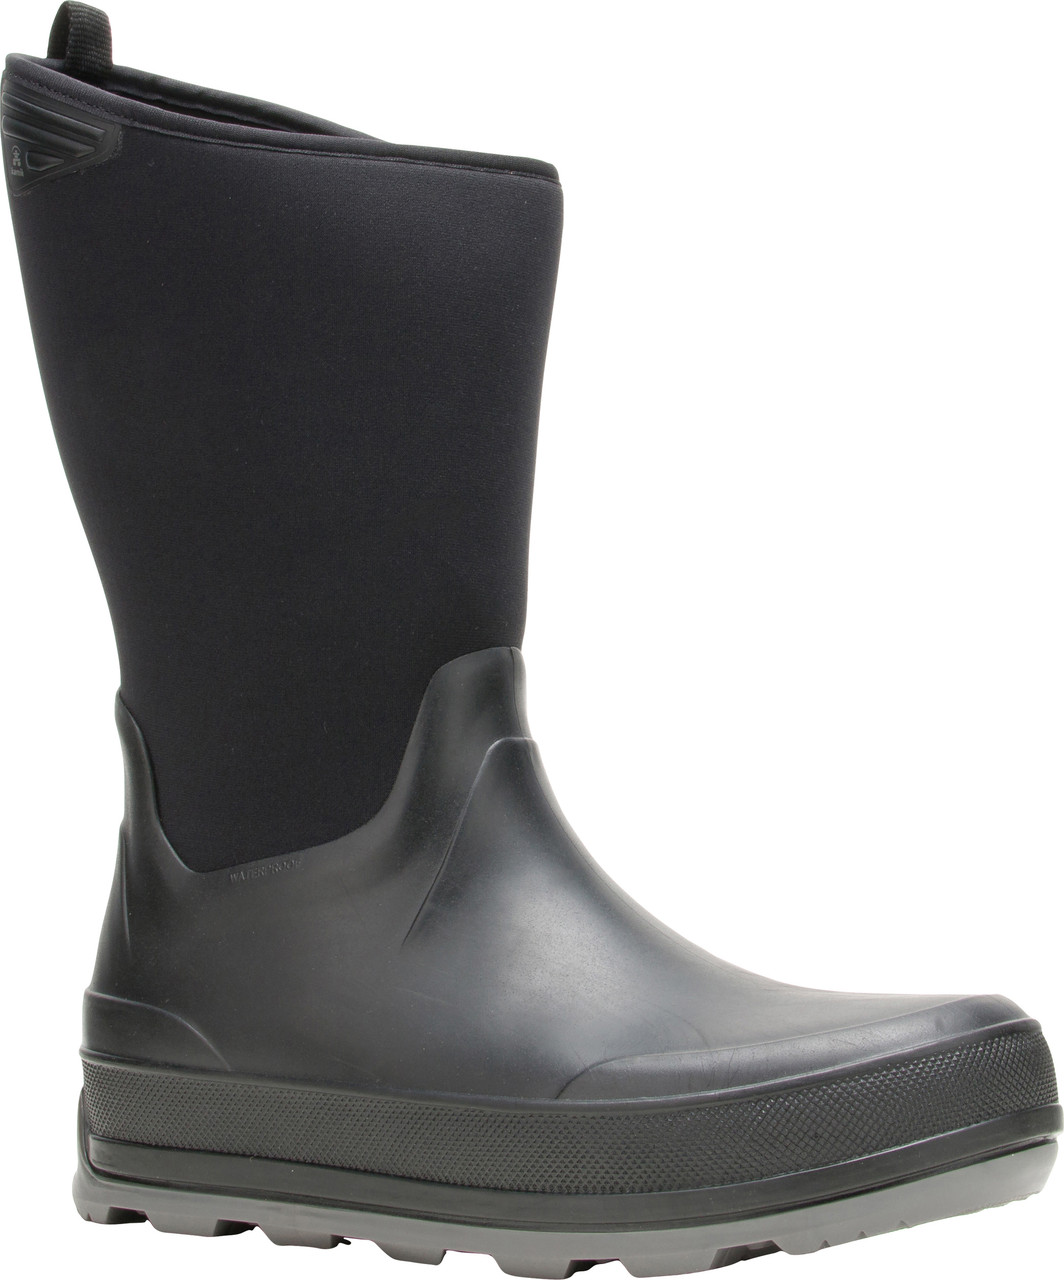 Kamik Timber Waterproof Winter Boots - Men's | MEC